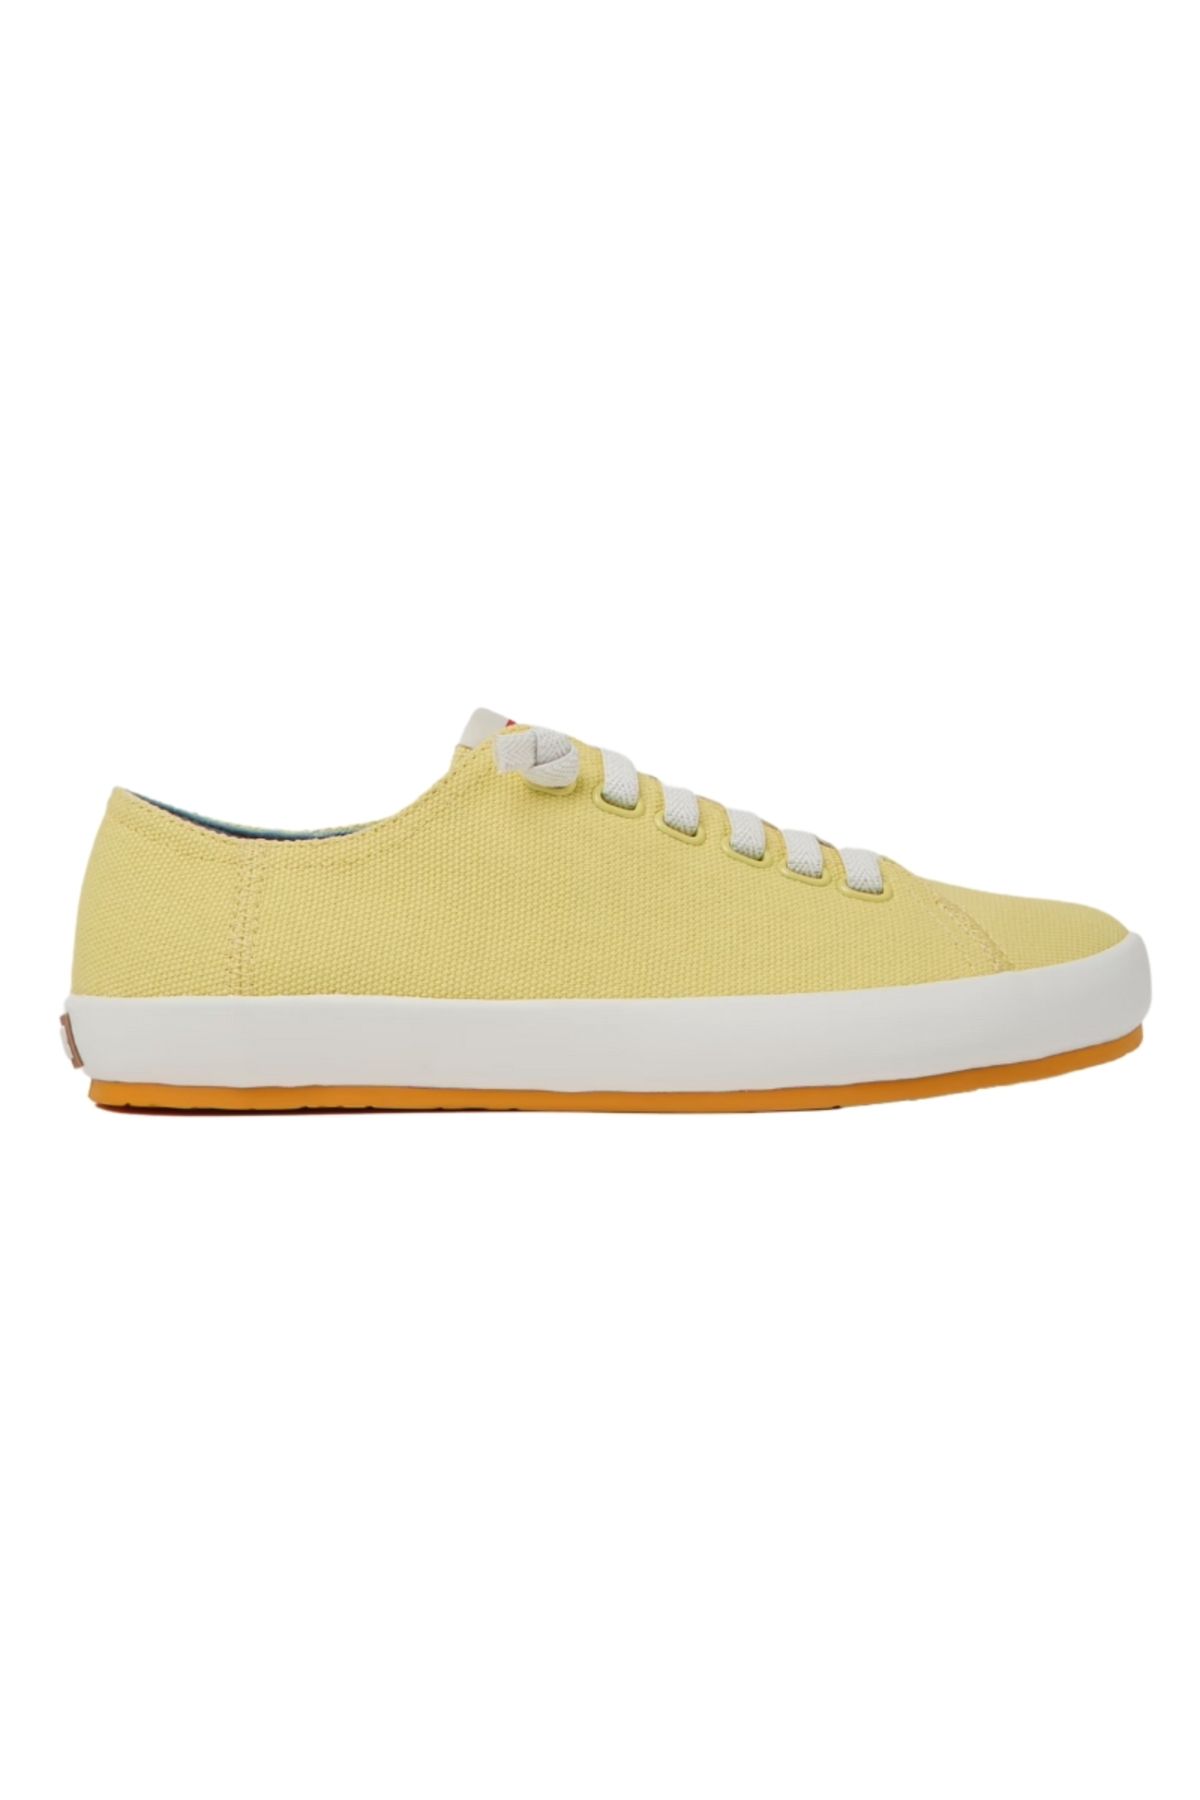 CAMPER Kadın Sarı Casual Ayakkabı 21897-081-sarı